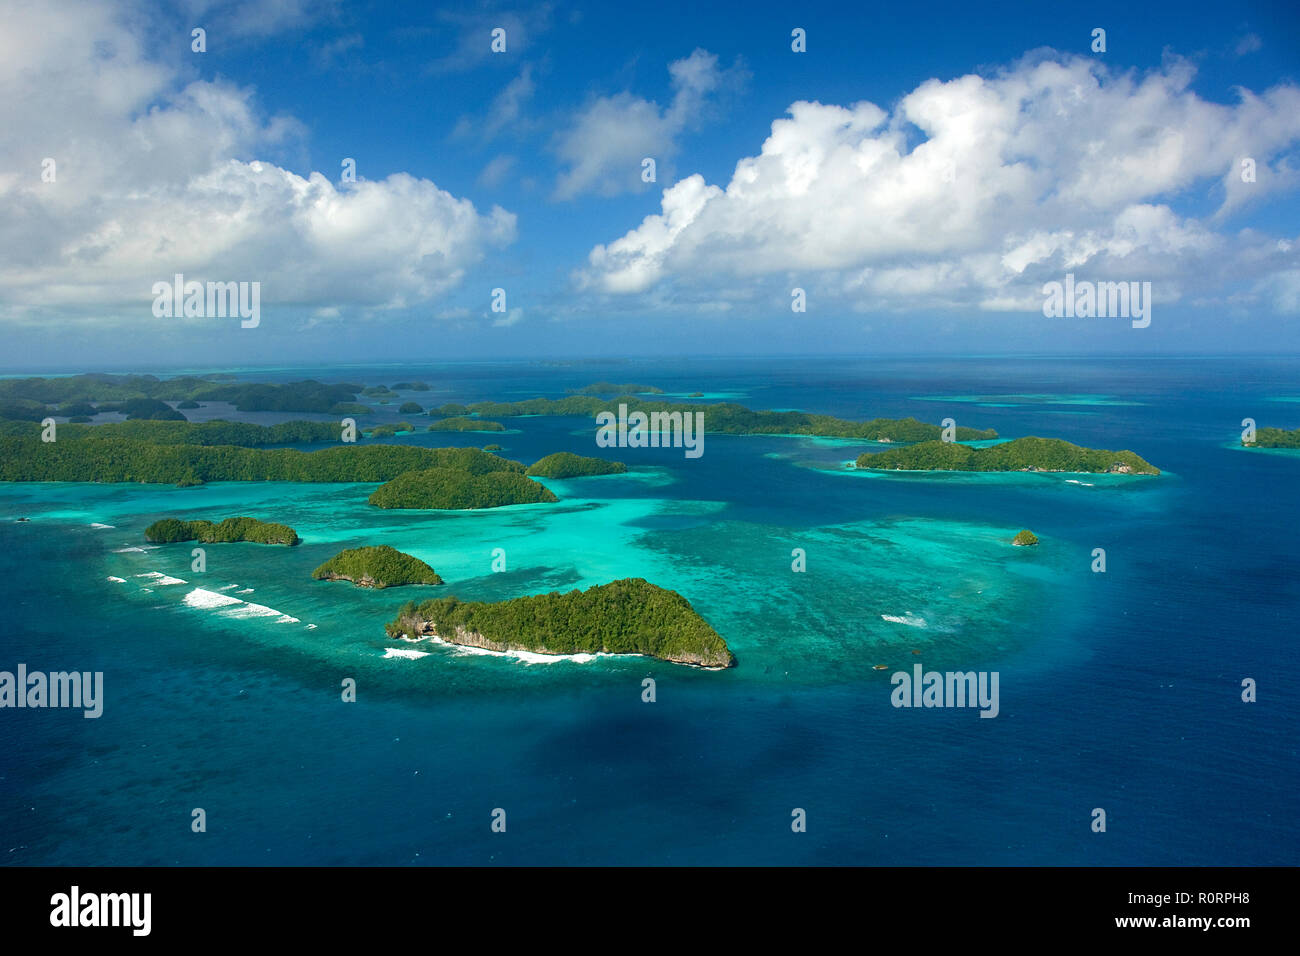 Luftaufnahme, bewaldete Inselgruppe im Westpazifik, Palau, Mikronesien | Luftaufnahme von Palau Inseln, Palau (Belau), Mikronesien Stockfoto